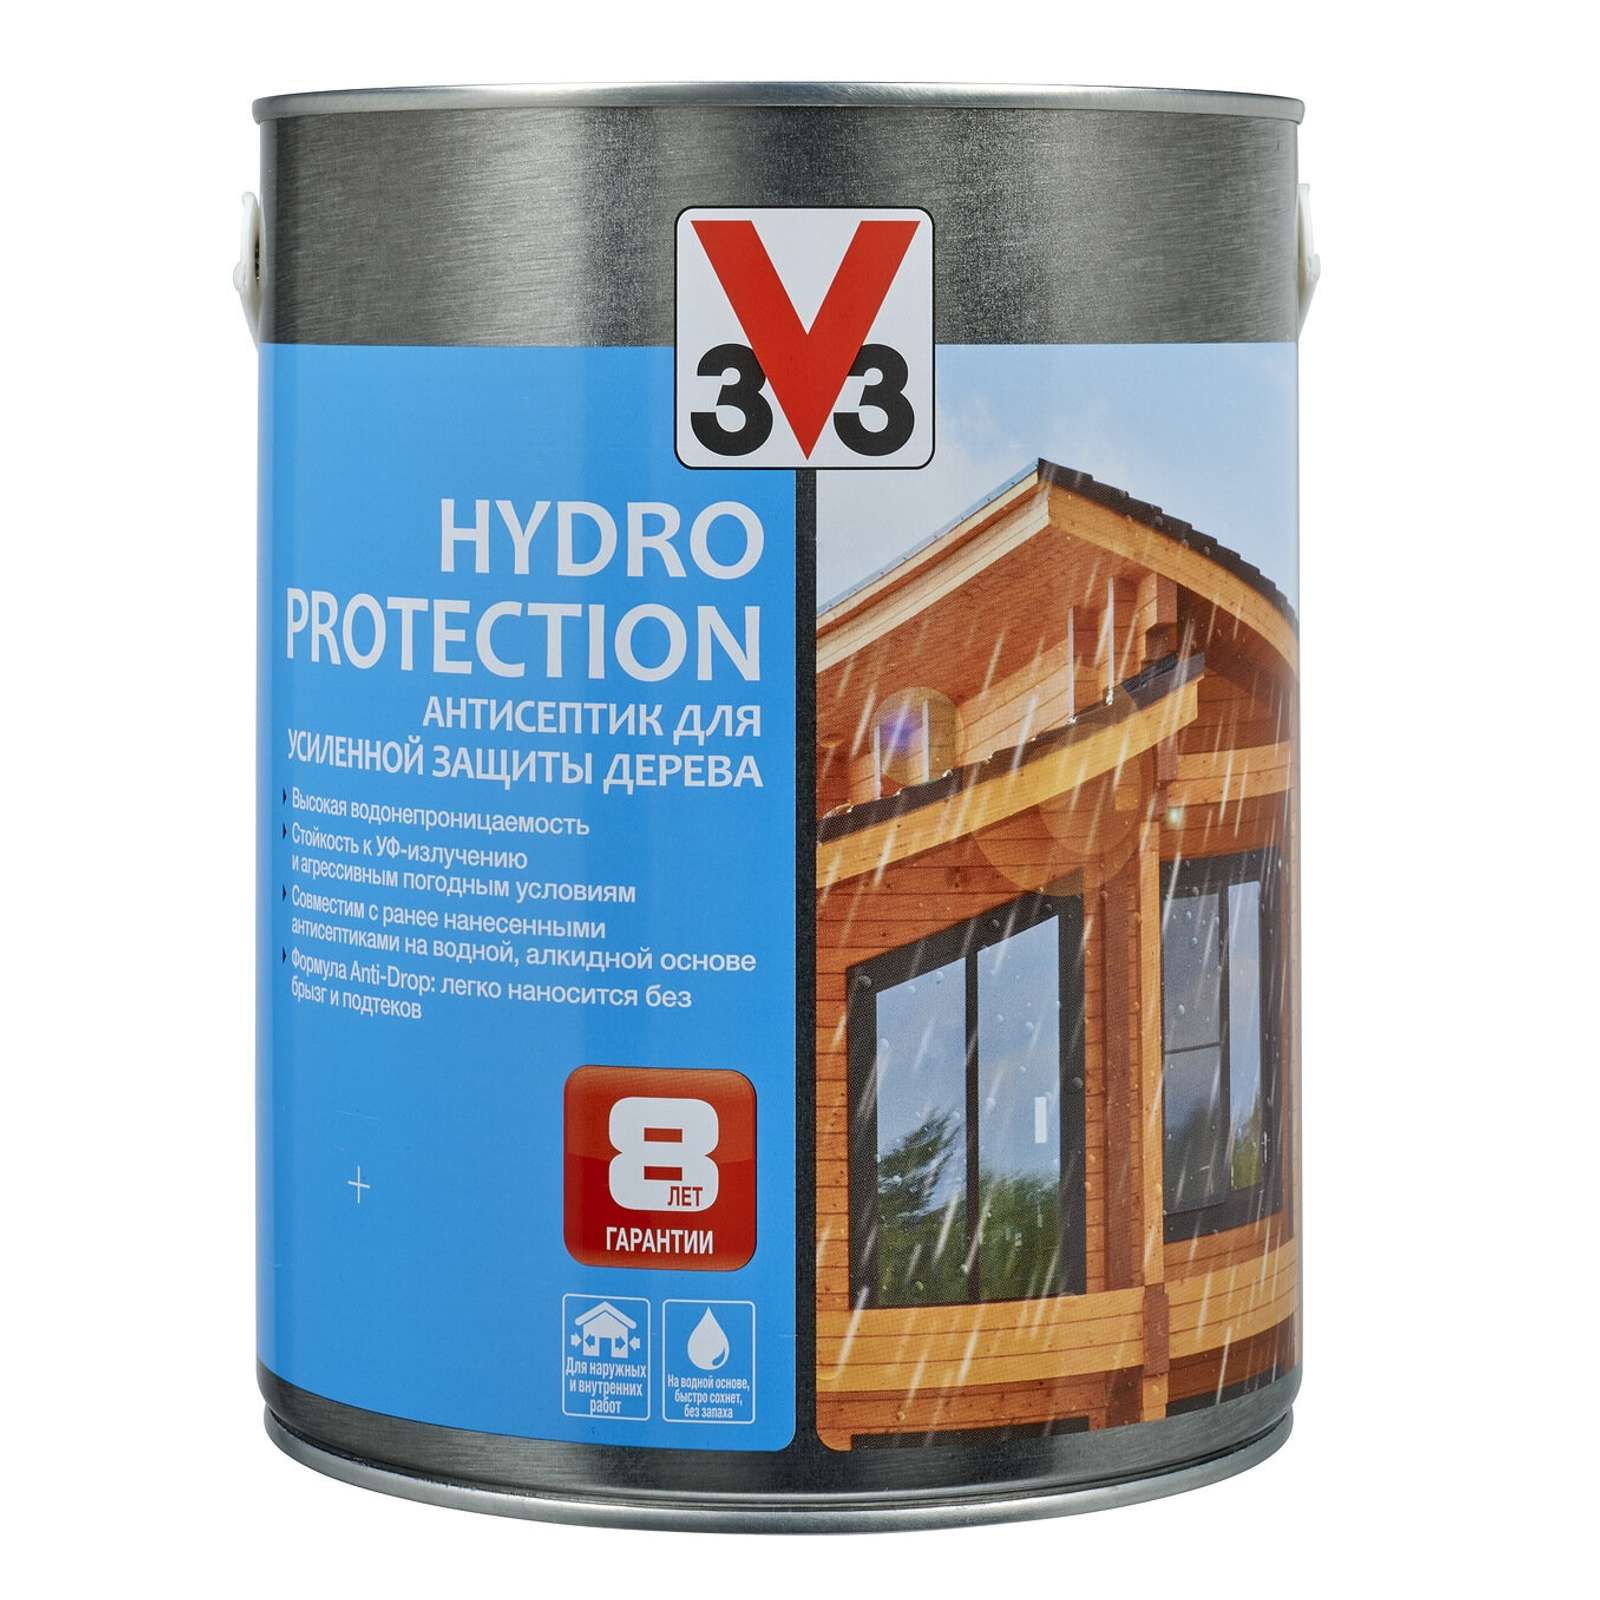 Купить  для дерева Hydro Protection Бесцветный, 9л в Самаре .